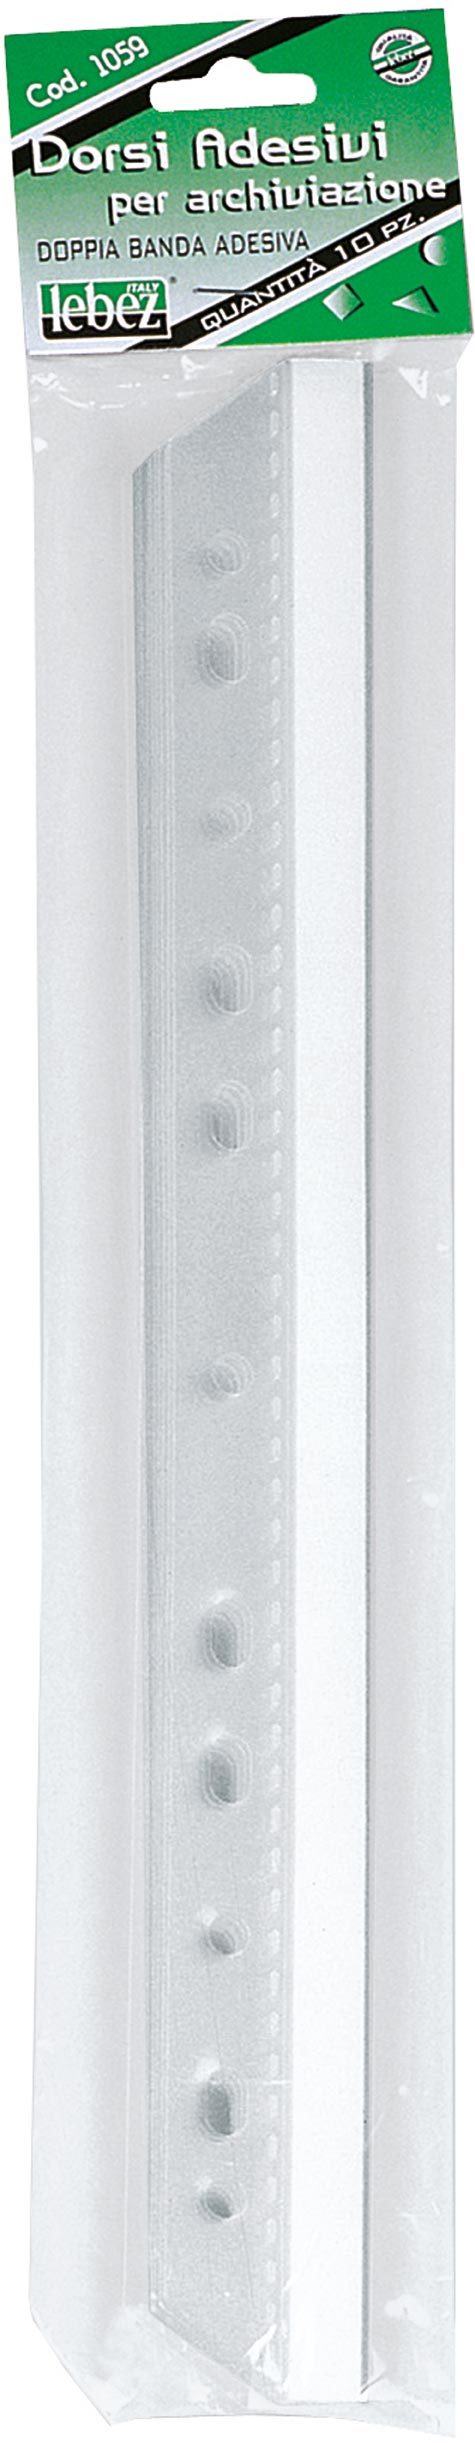 gbc Dorsi adesivi doppi foratura universale Doppia banda adesiva, formato: 300x38mm.